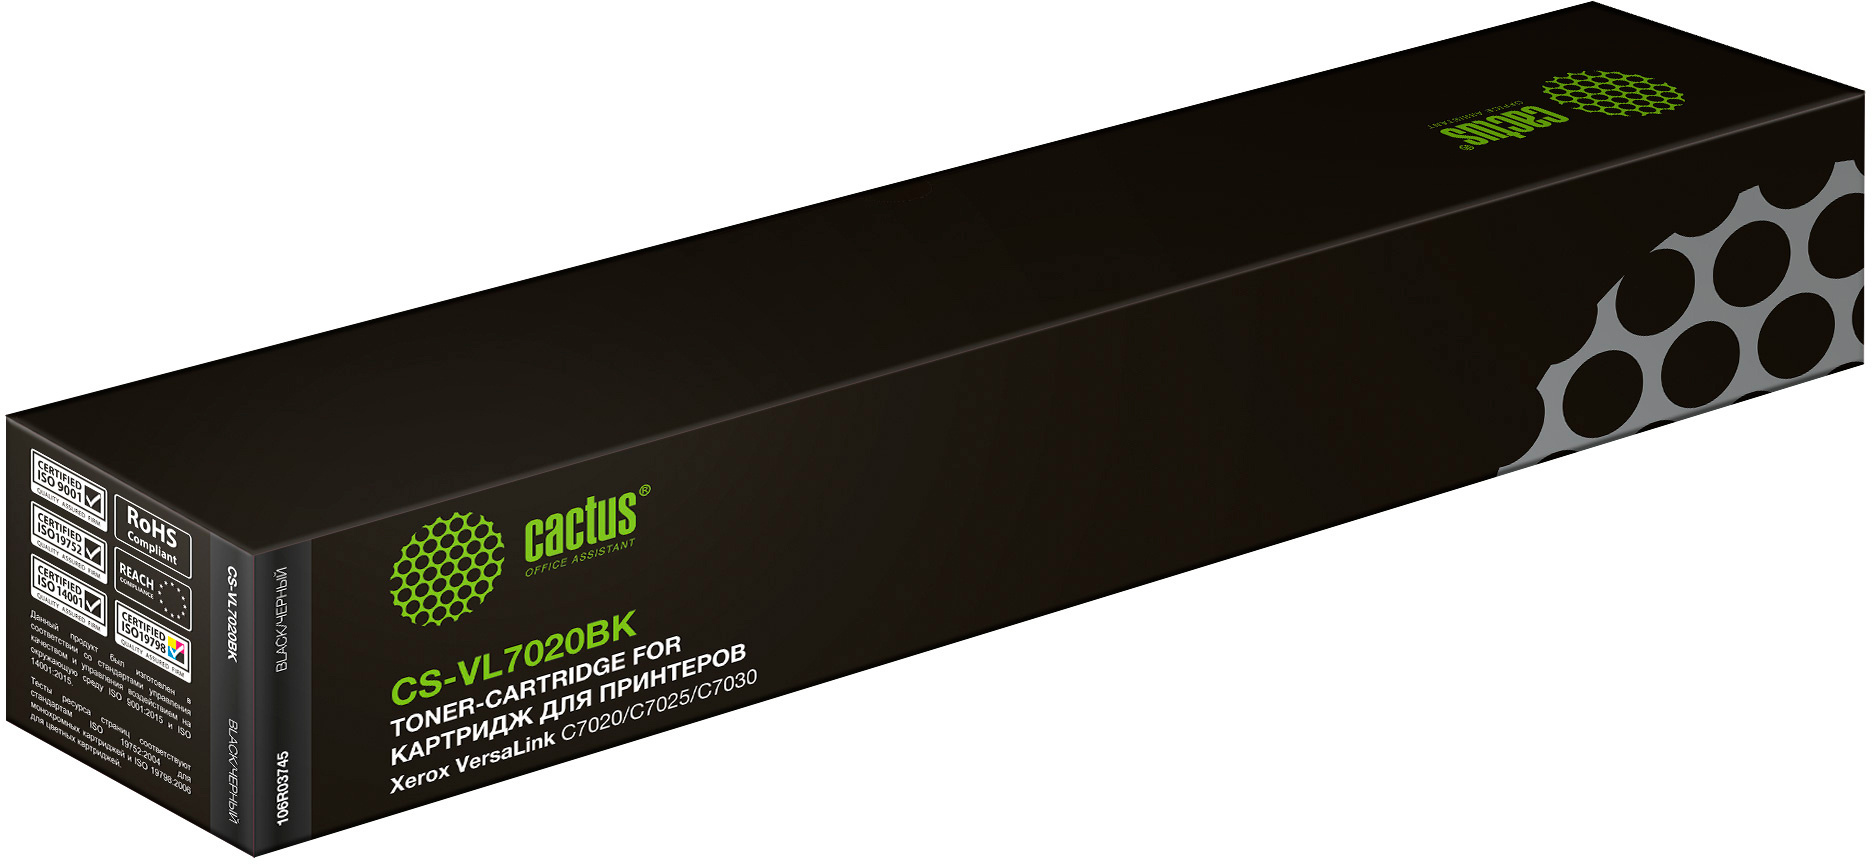 фото: Картридж лазерный Cactus CS-VL7020BK 106R03745 черный (23600стр.) для Xerox VersaLink C7020/C7025/C7